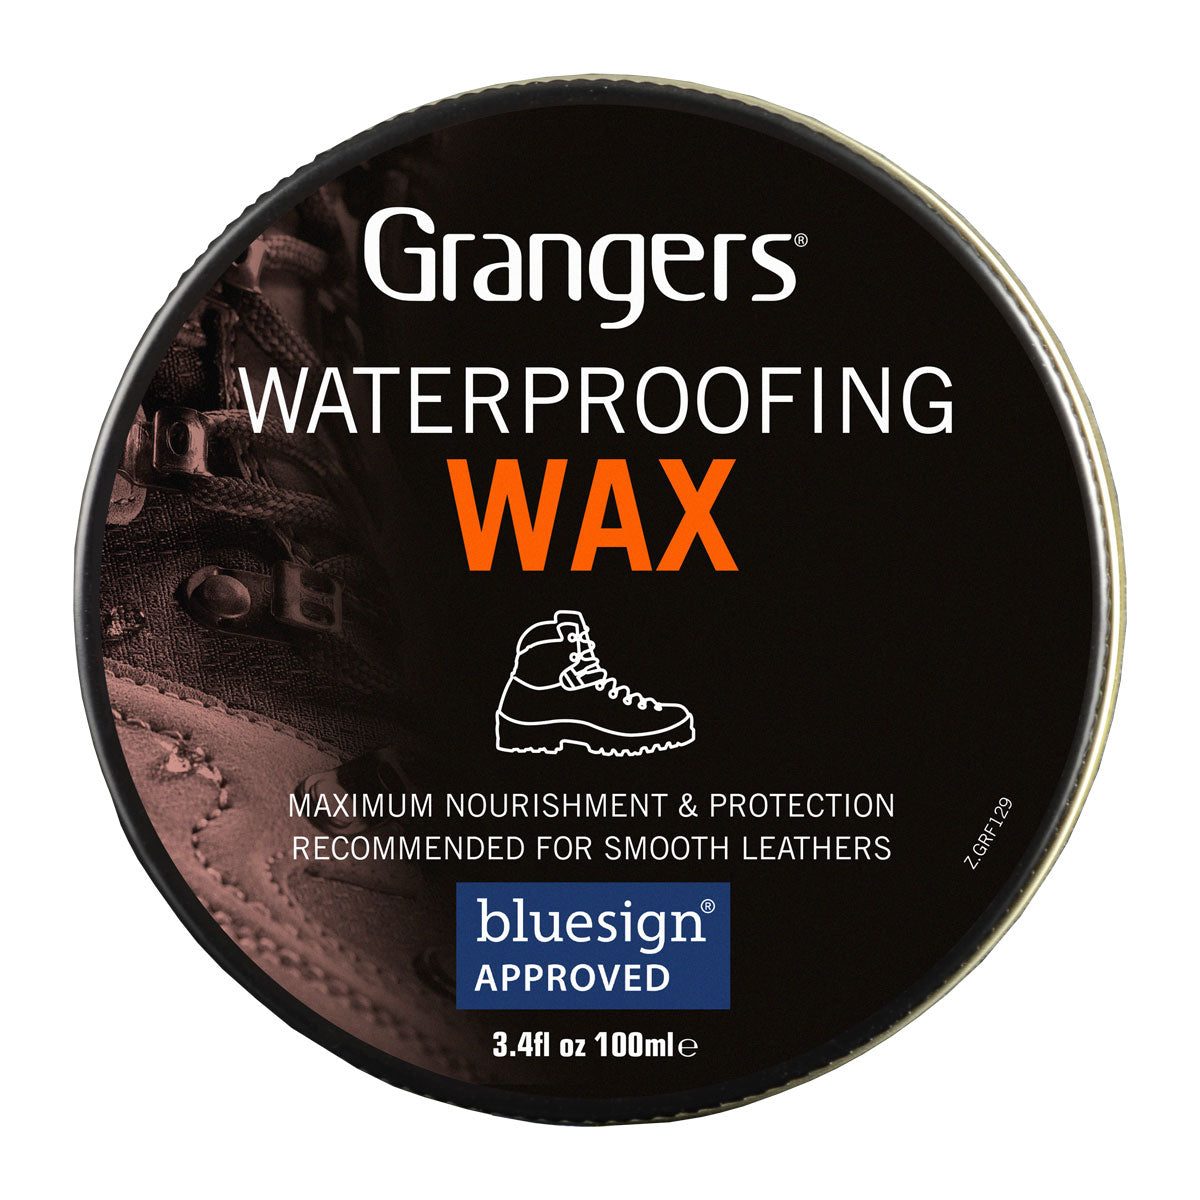 Grangers Waterproofing Wax 1600x1600